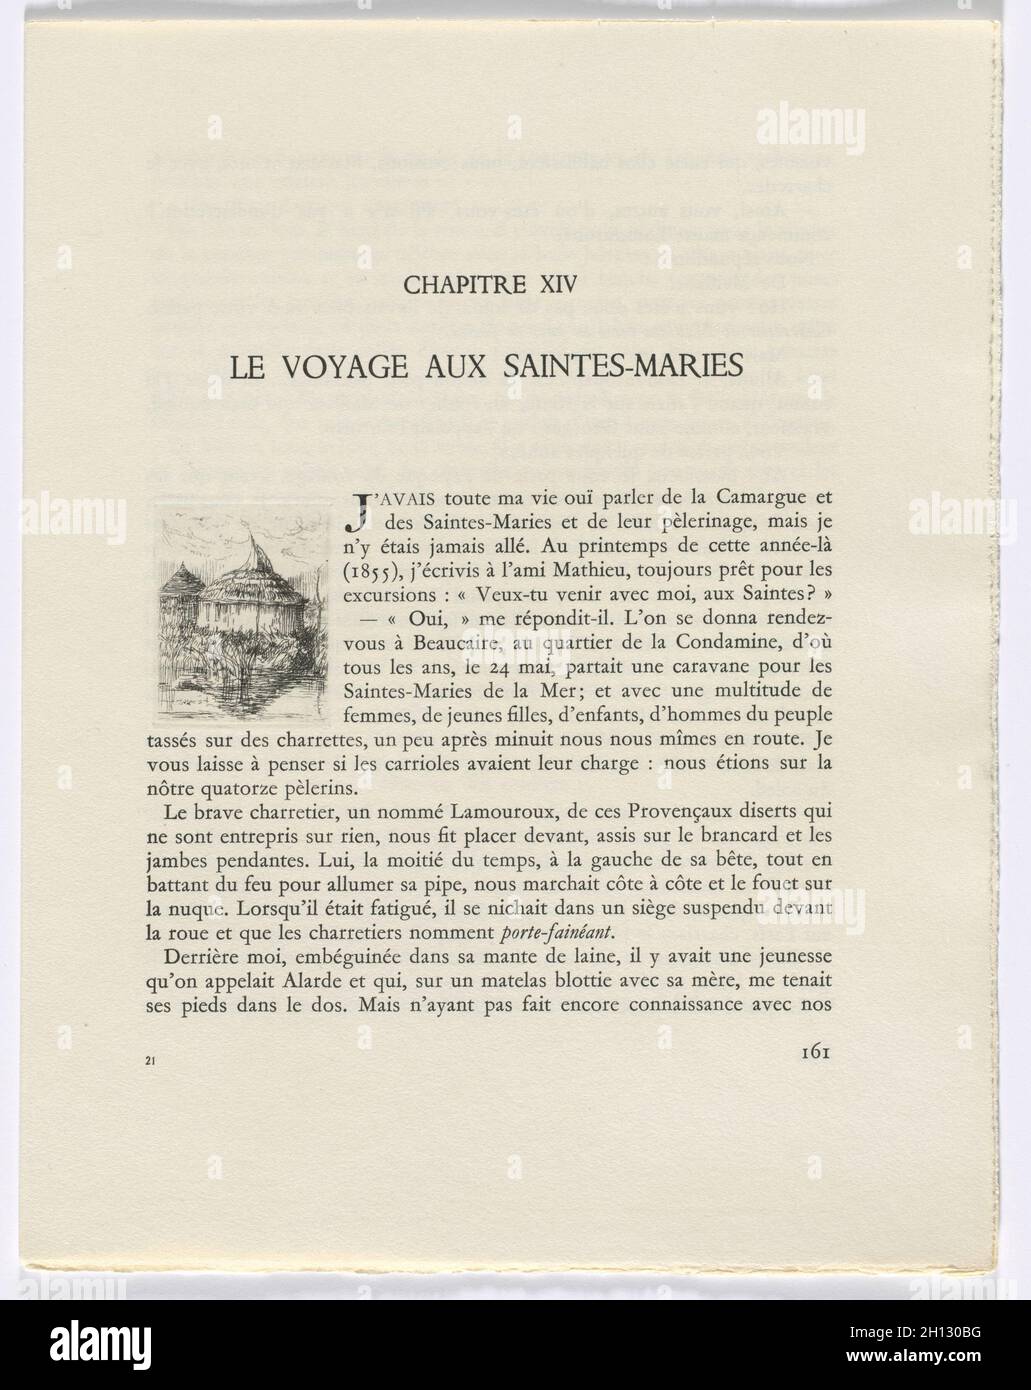 Frédéric Mistral: Mémoires et recites de Frédéric Mistral: Edificio redondo (página 161), 1937. Auguste Brouet (francés, 1872-1941). Grabados; total: 28,5 x 22,2 x 4,4 cm (11 1/4 x 8 3/4 x 1 3/4 pulg.). Foto de stock